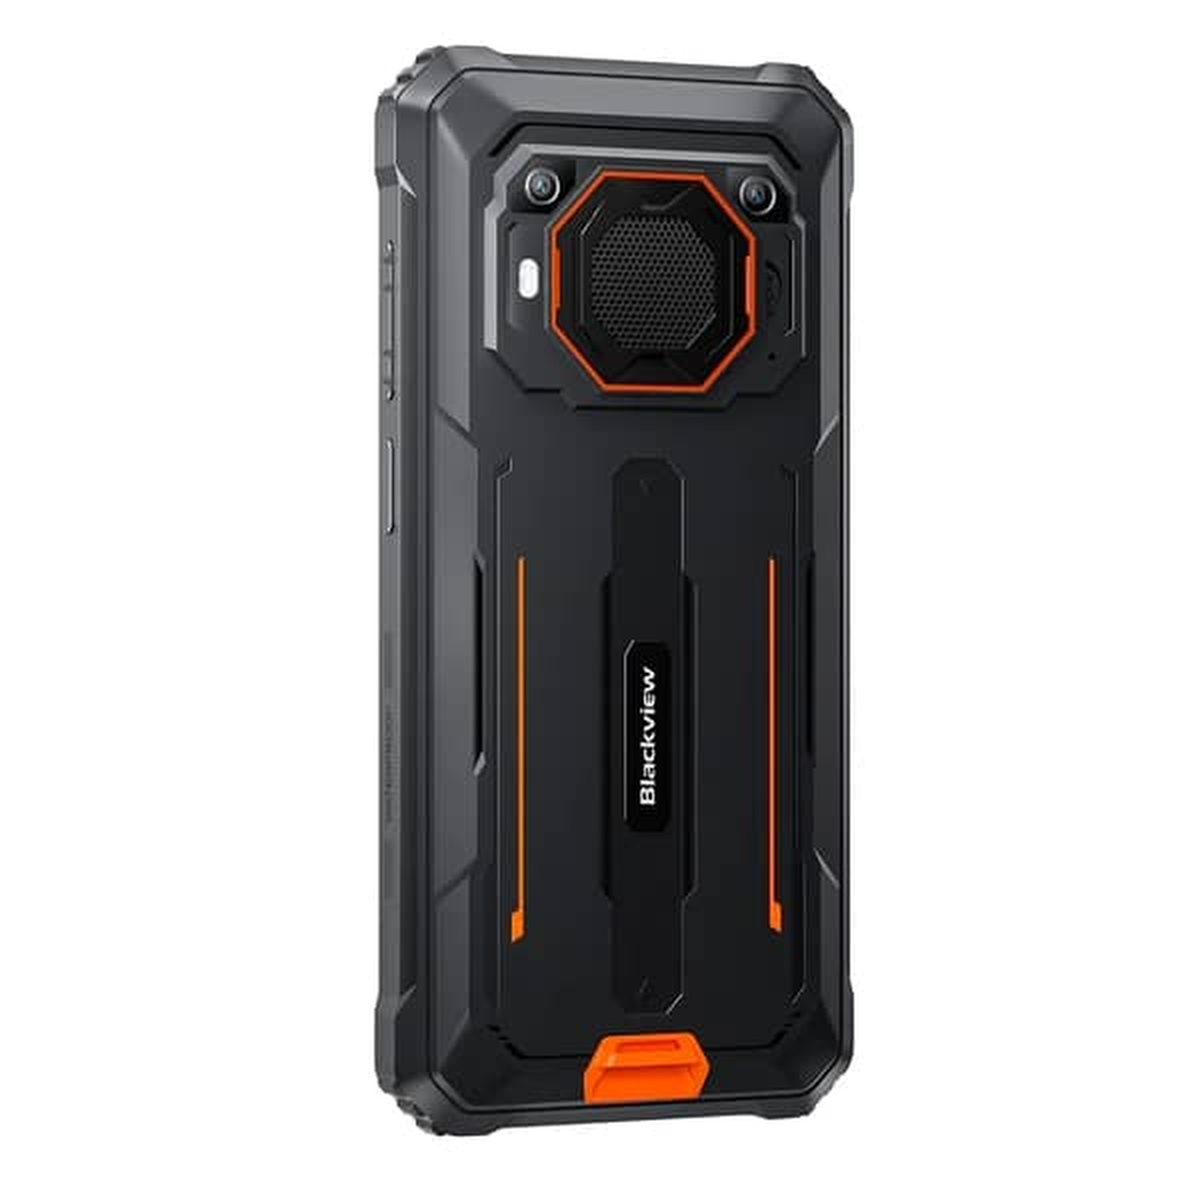 Orange orange SIM BV6200Pro BLACKVIEW 128 Dual Rugged GB